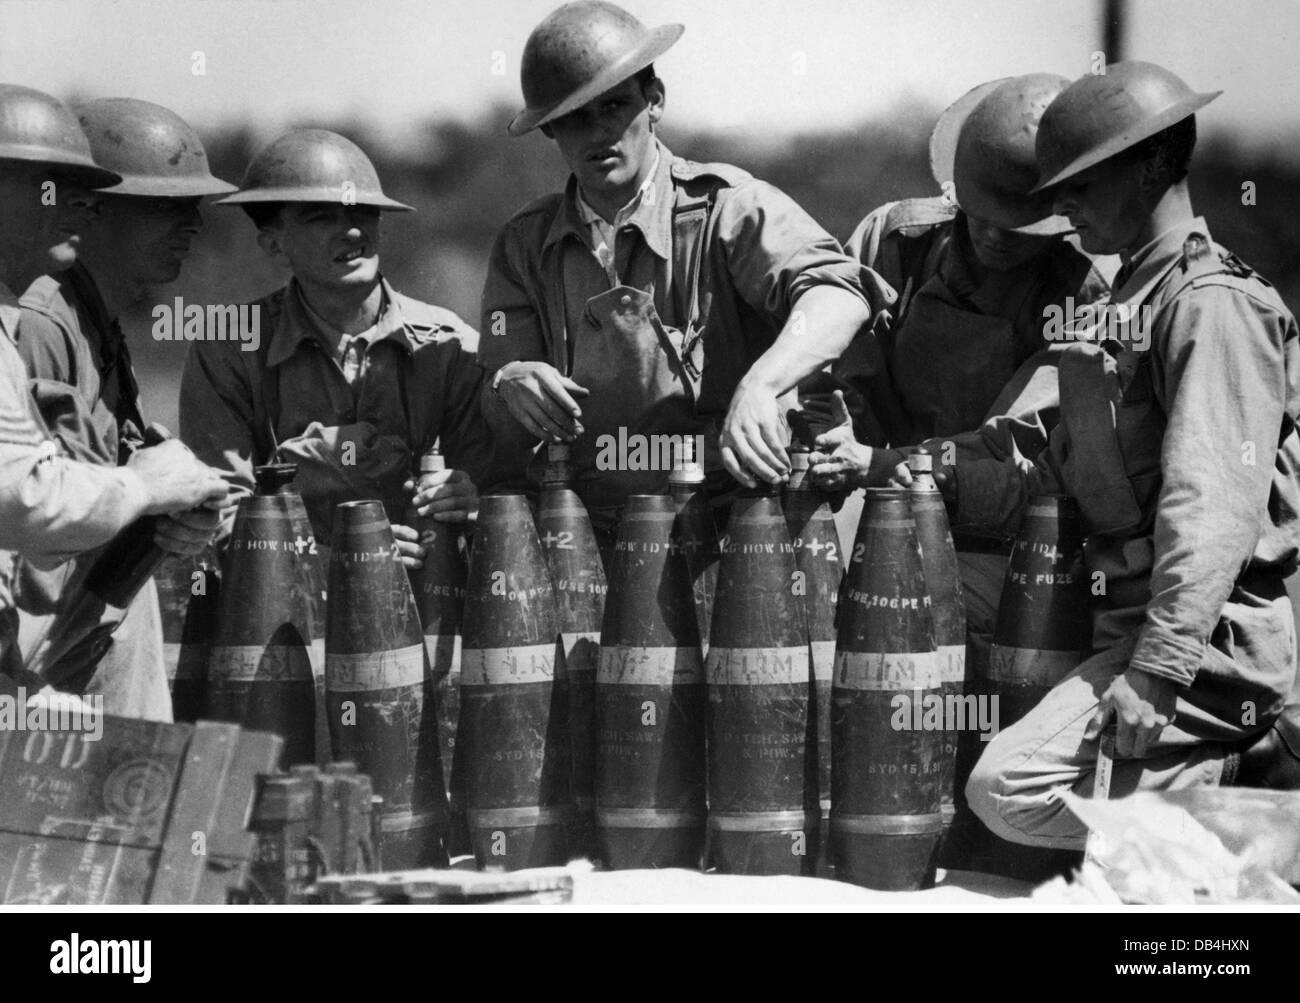 Militaire, Australie, artilerymen pendant leur entraînement, vers 1940, droits additionnels-Clearences-non disponible Banque D'Images